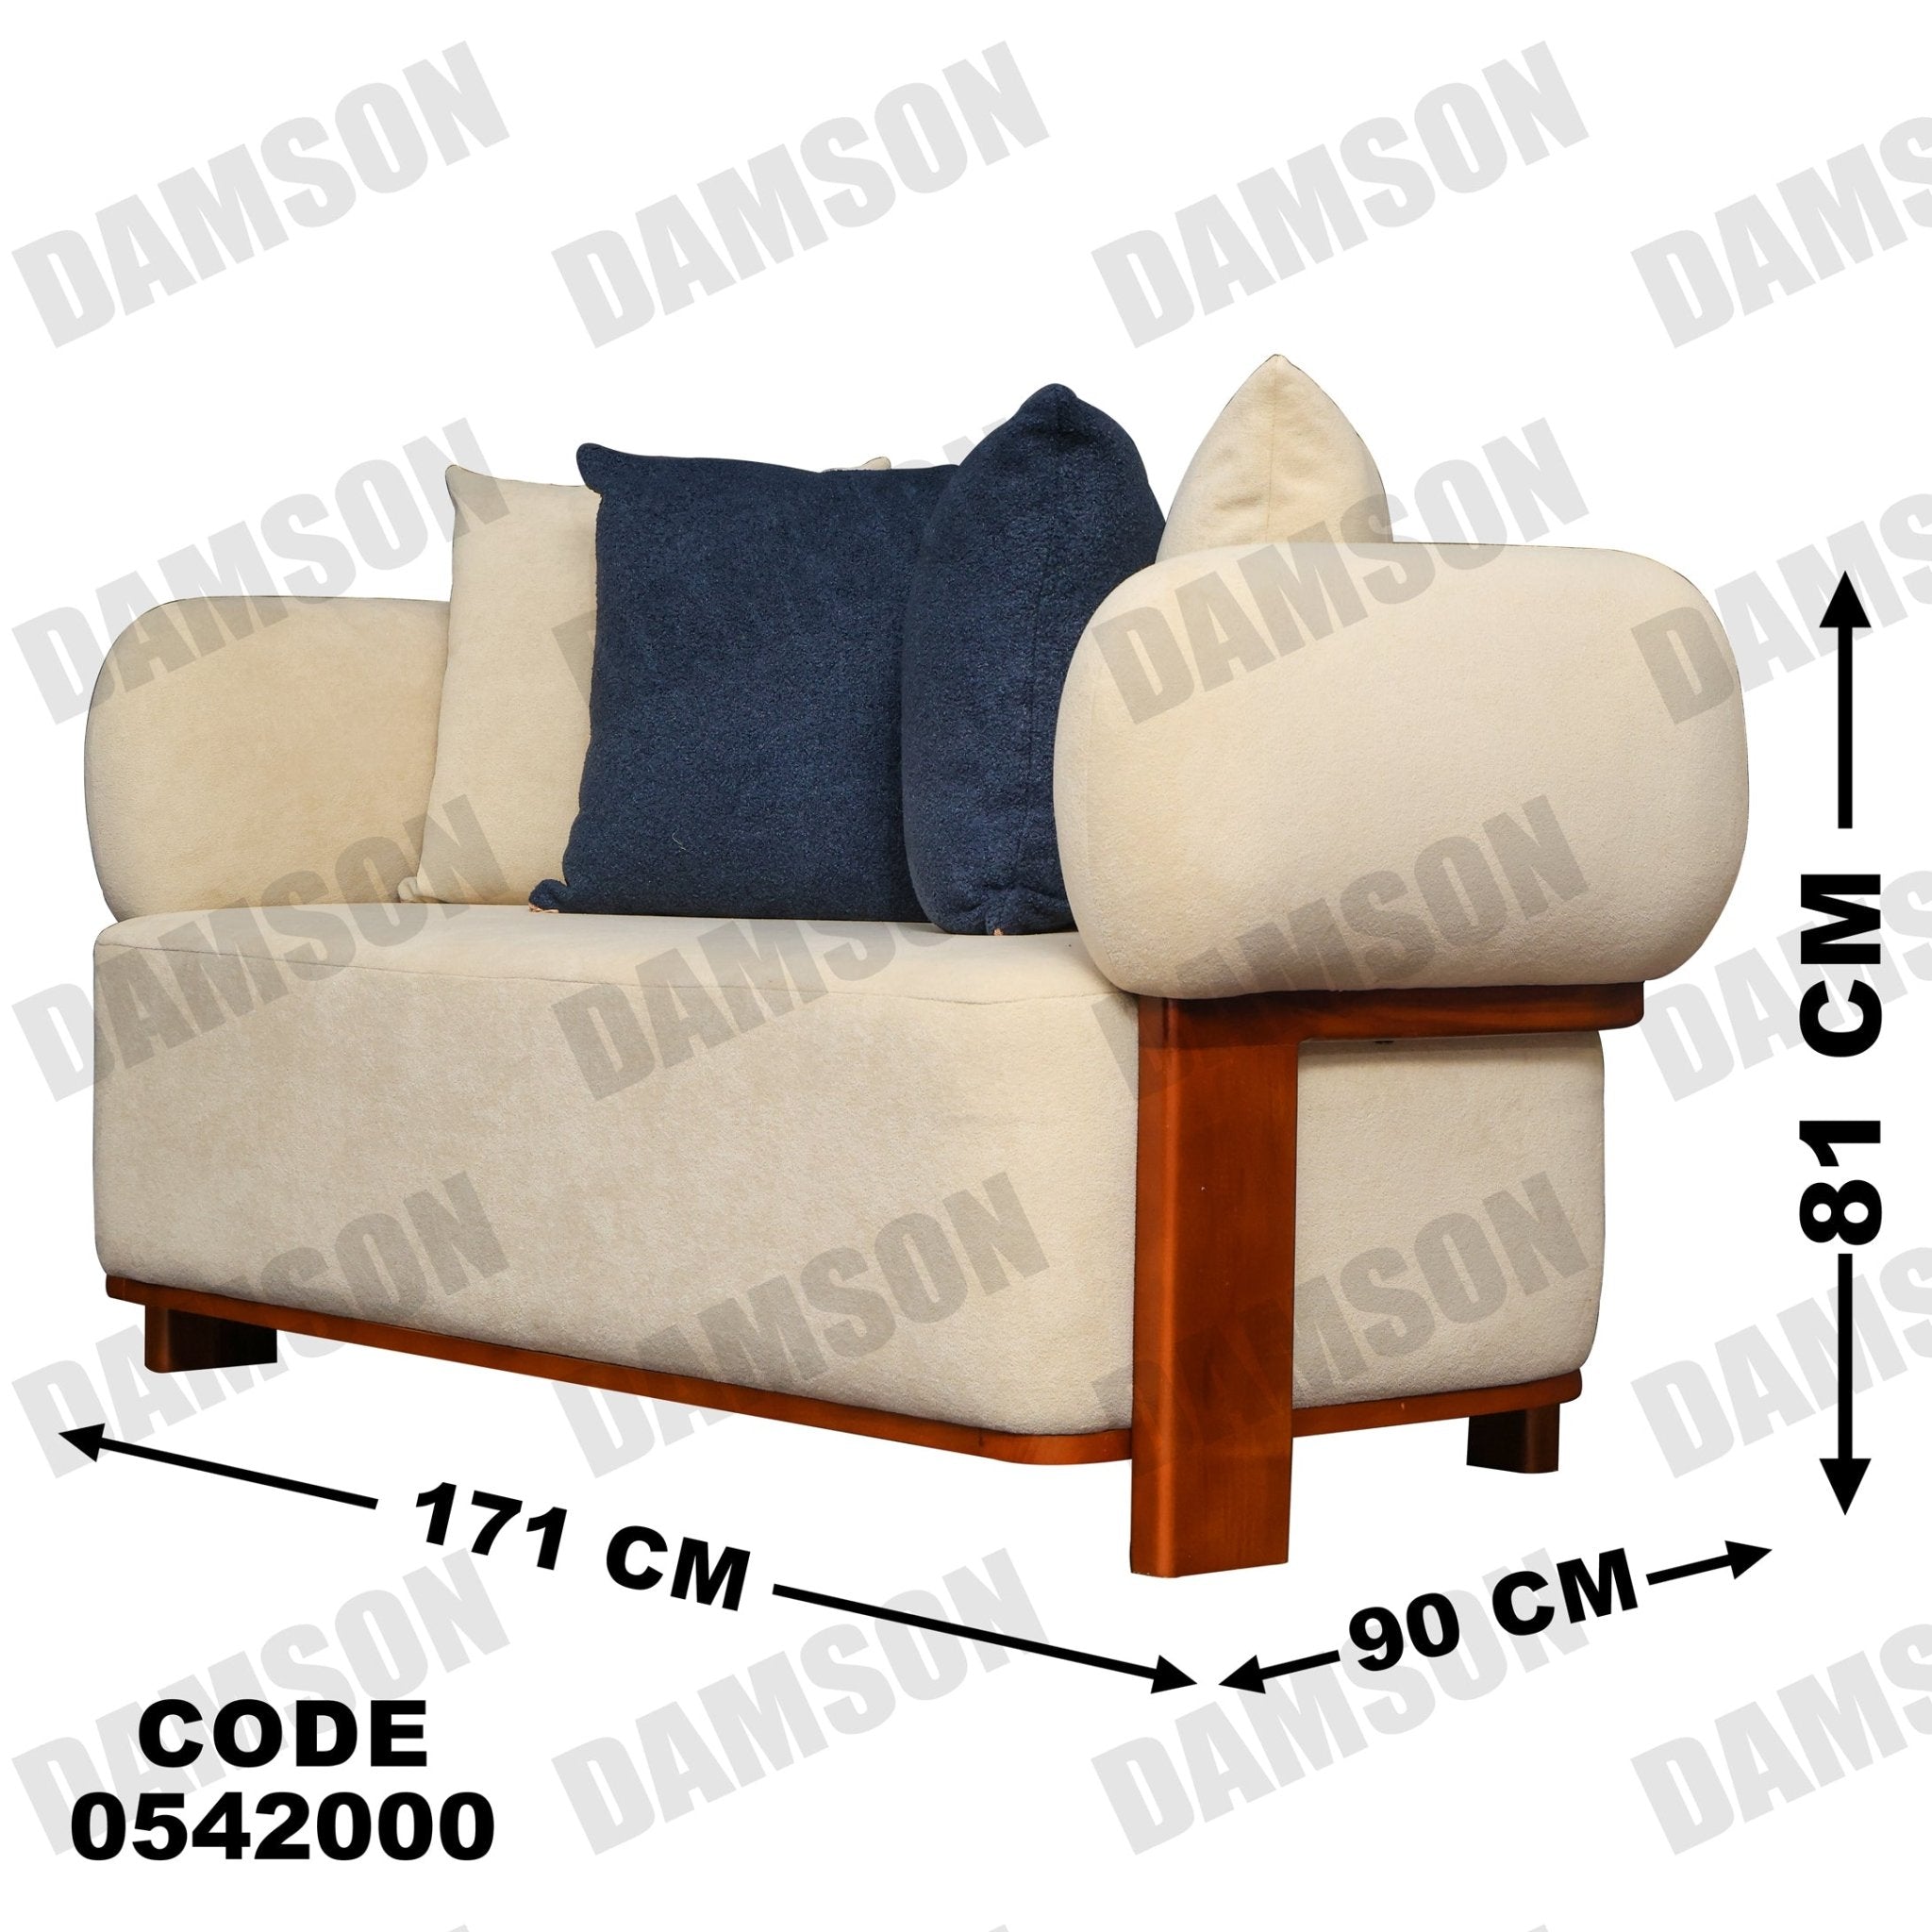 انترية 420 - Damson Furnitureانترية 420